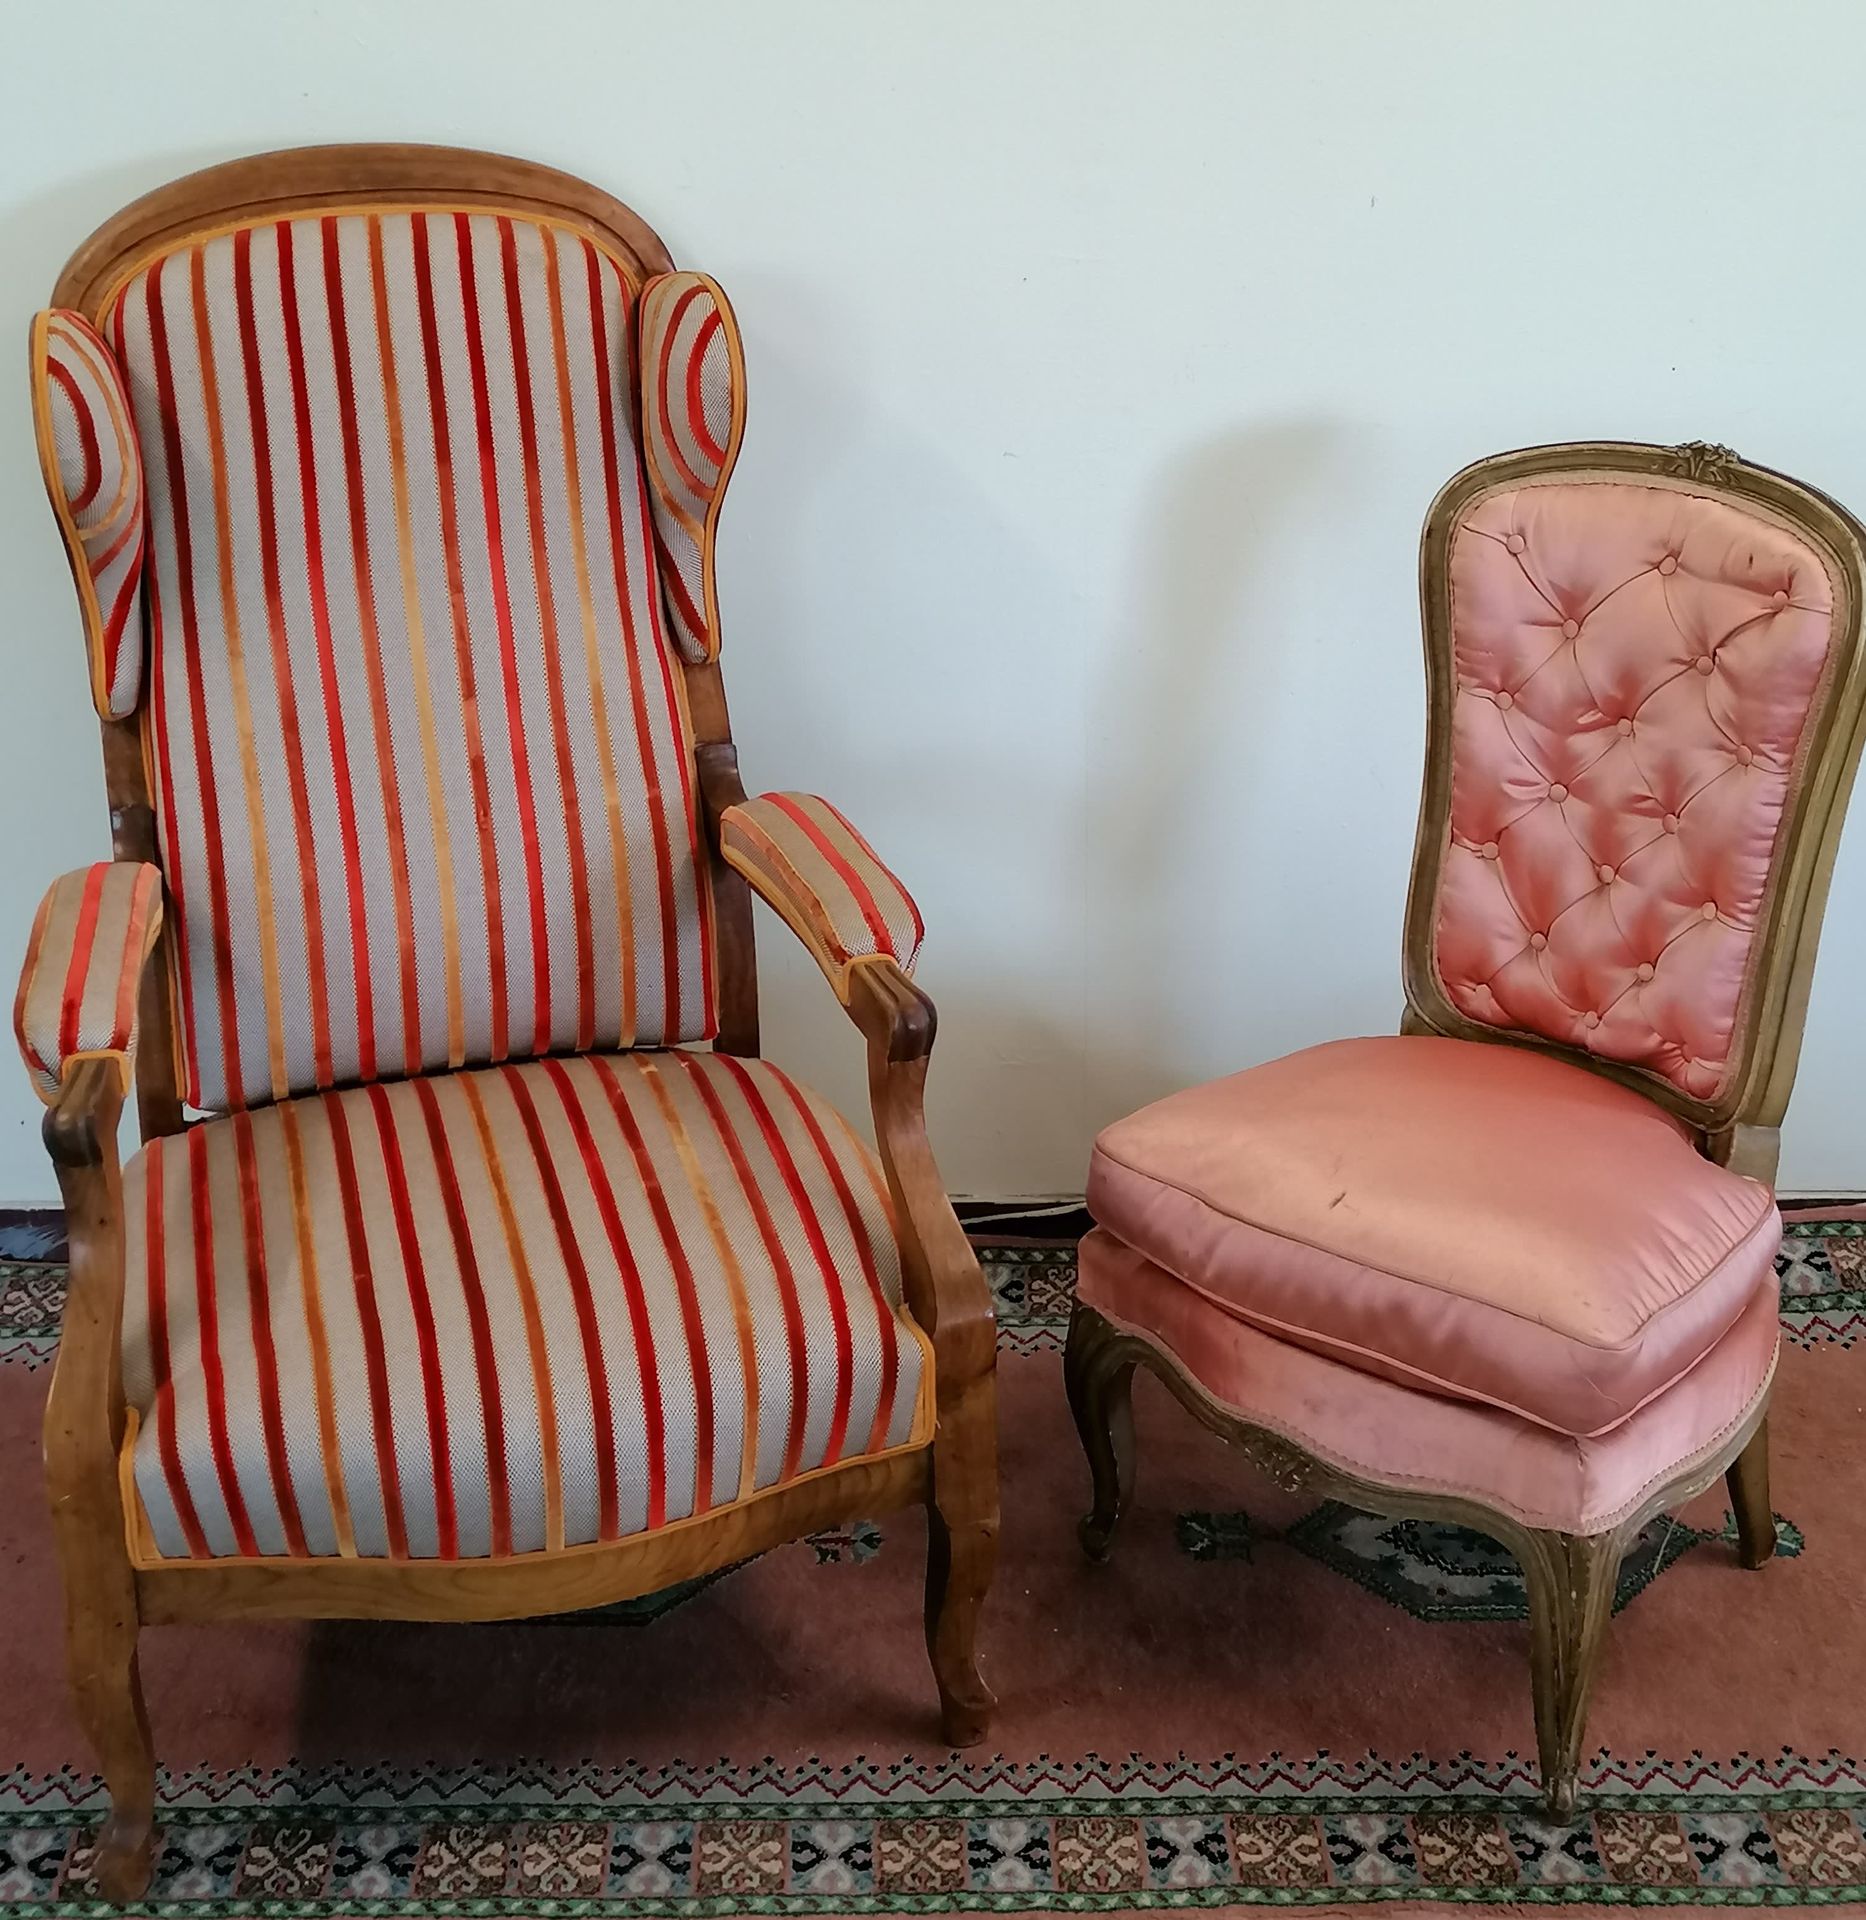 Null SILLÓN VOLTAIRE CON OREJAS

Se adjunta un sillón de estilo Luis XV